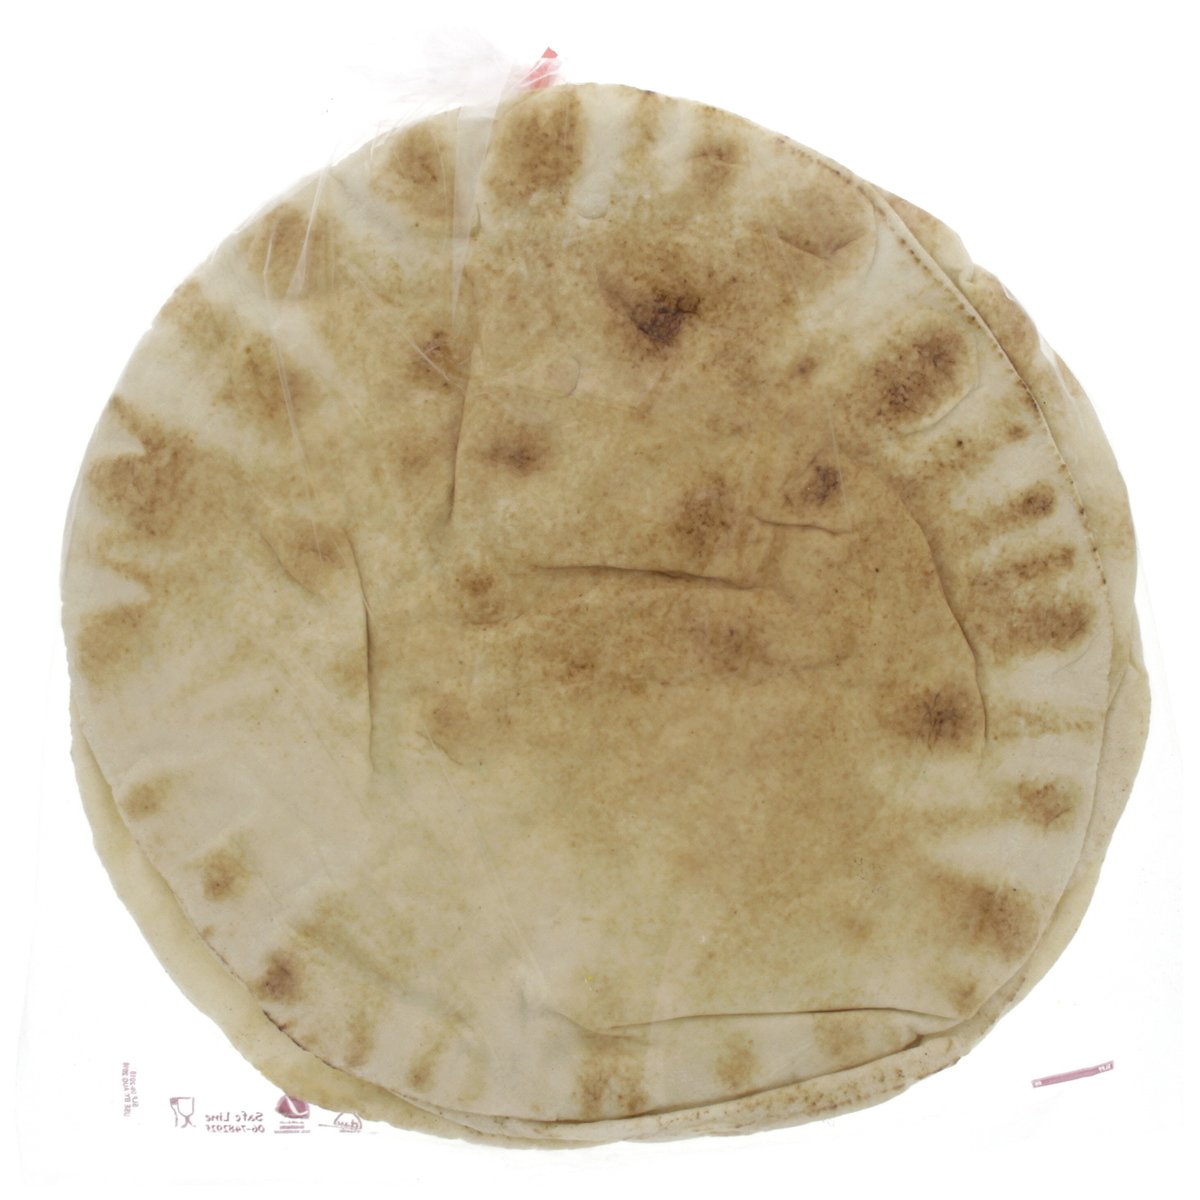 المخبز الحديث خبز لبناني أبيض كبير 6 قطع